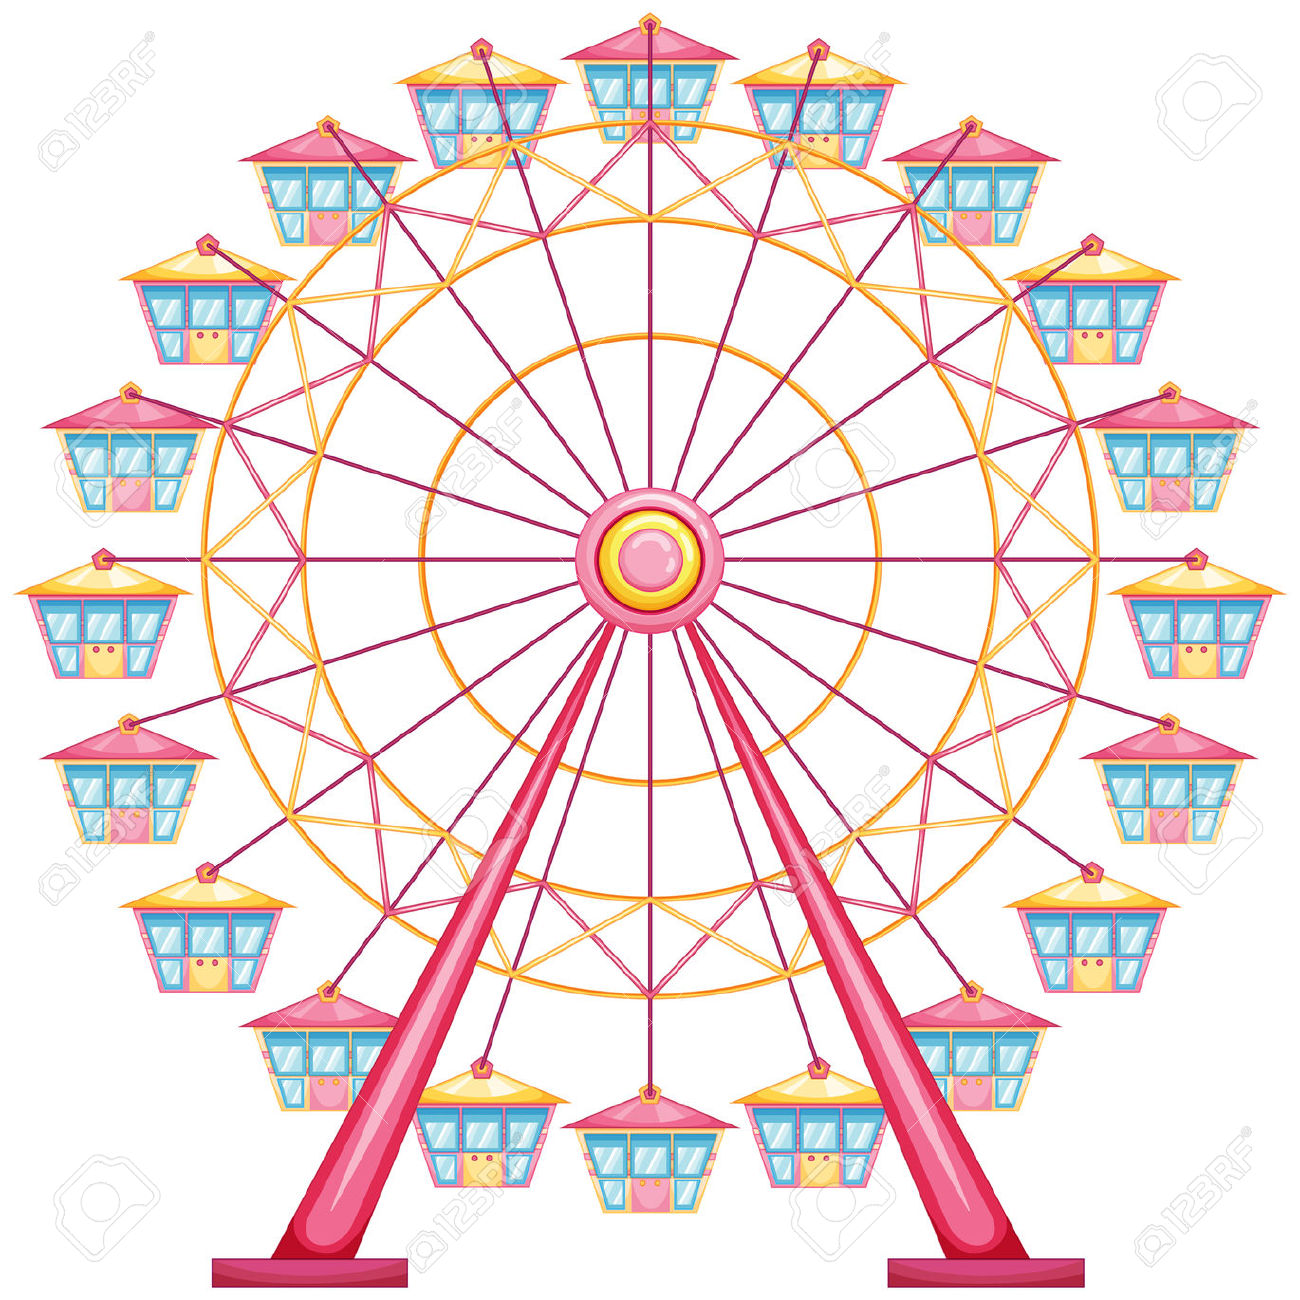 Ferris wheel clipart 2 - Ferris Wheel Clipart